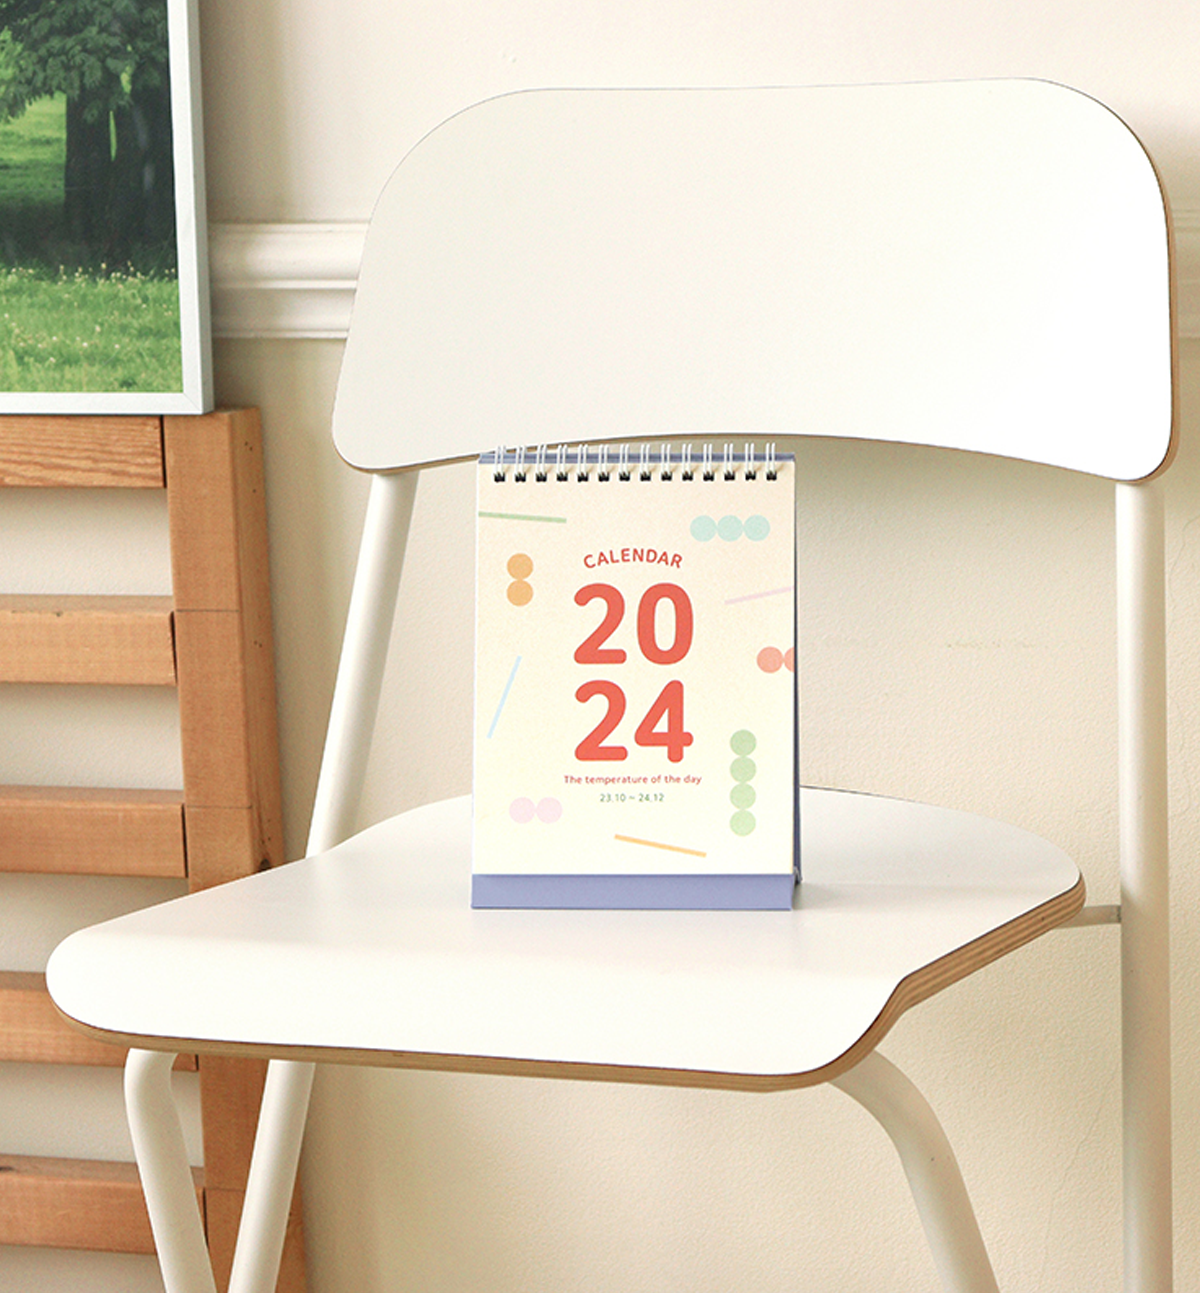 2024 Temperature Of The Day Desk Calendar